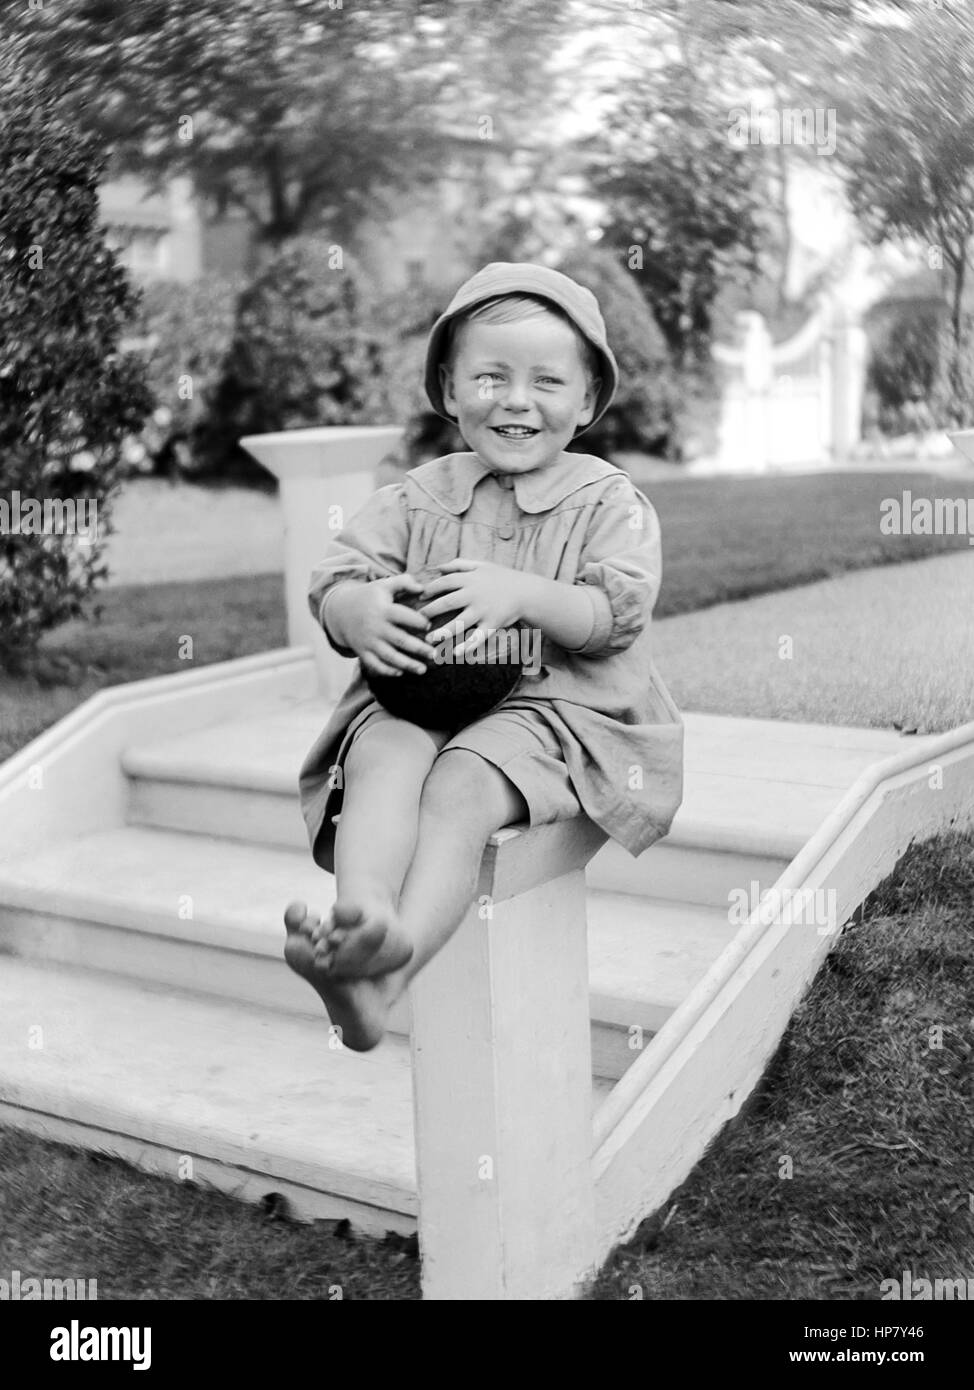 Victorian Foto von einem lächelnden jungen Kind in einem formalen Garten saß auf einem kurzen konkreten post Holding eine Kugel an der Unterseite der Garten Schritte. Um 1910 Stockfoto